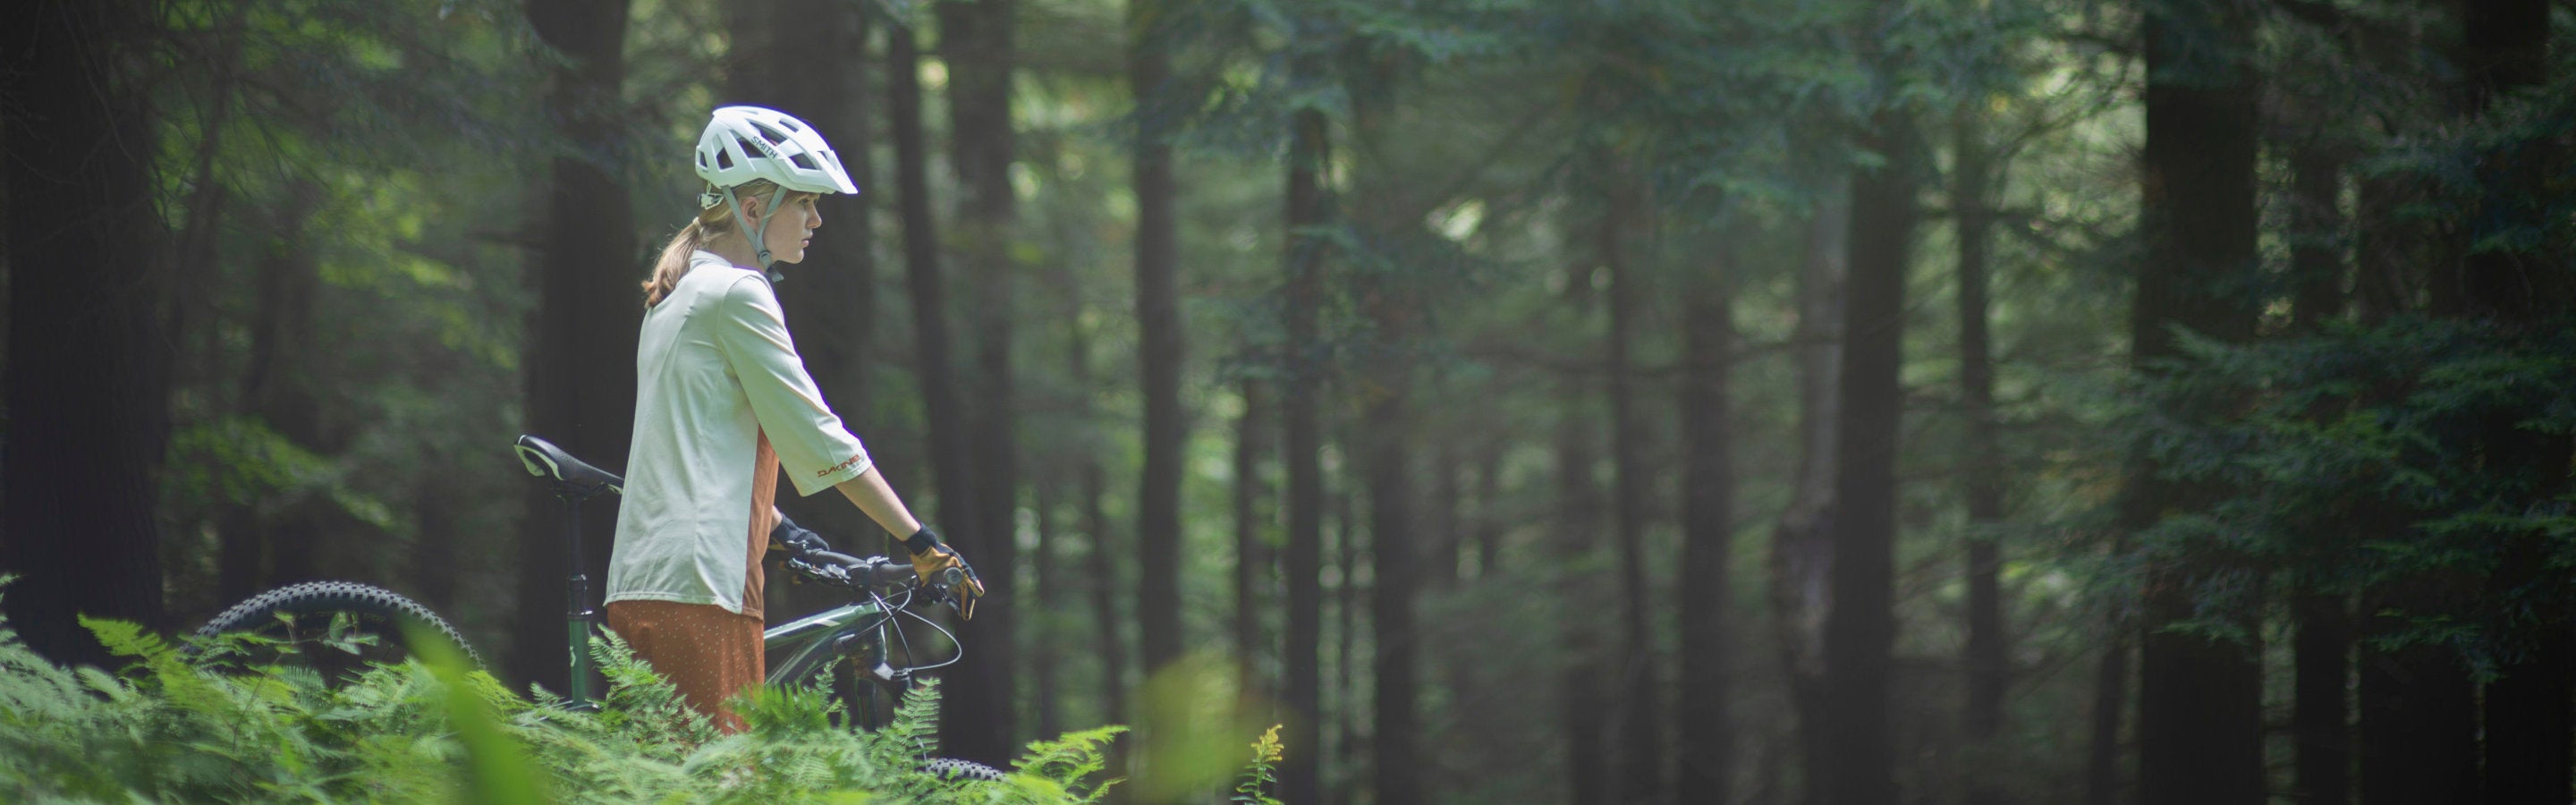 Quel équipement de protection porter en vélo de montagne? – Oberson